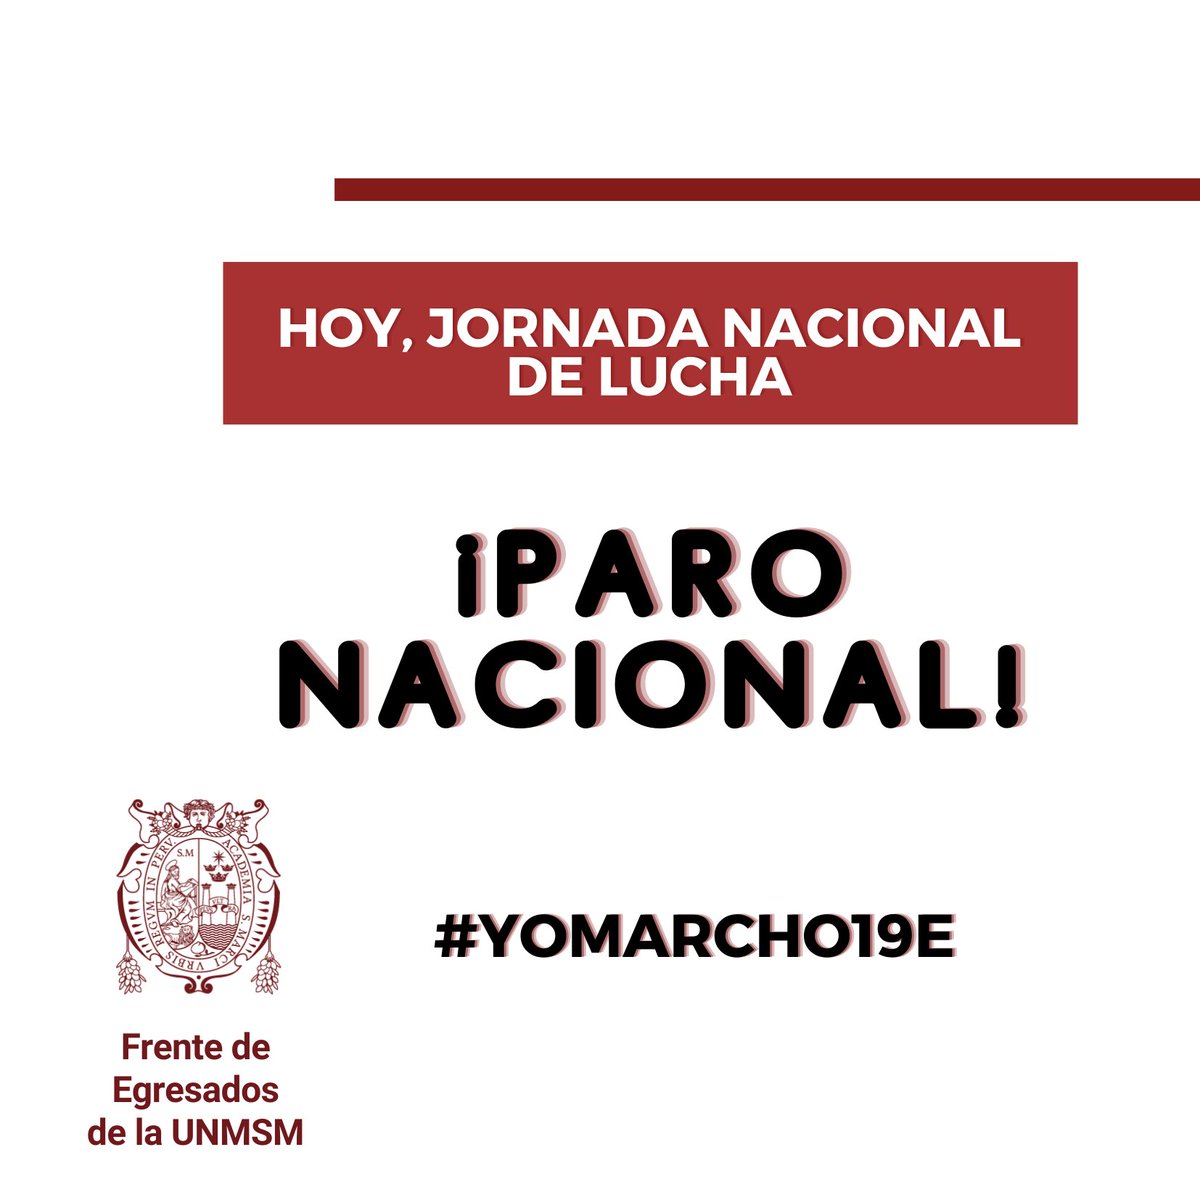 Hoy, Paro Nacional!
#YoMarcho19E  #DinaRenuncia